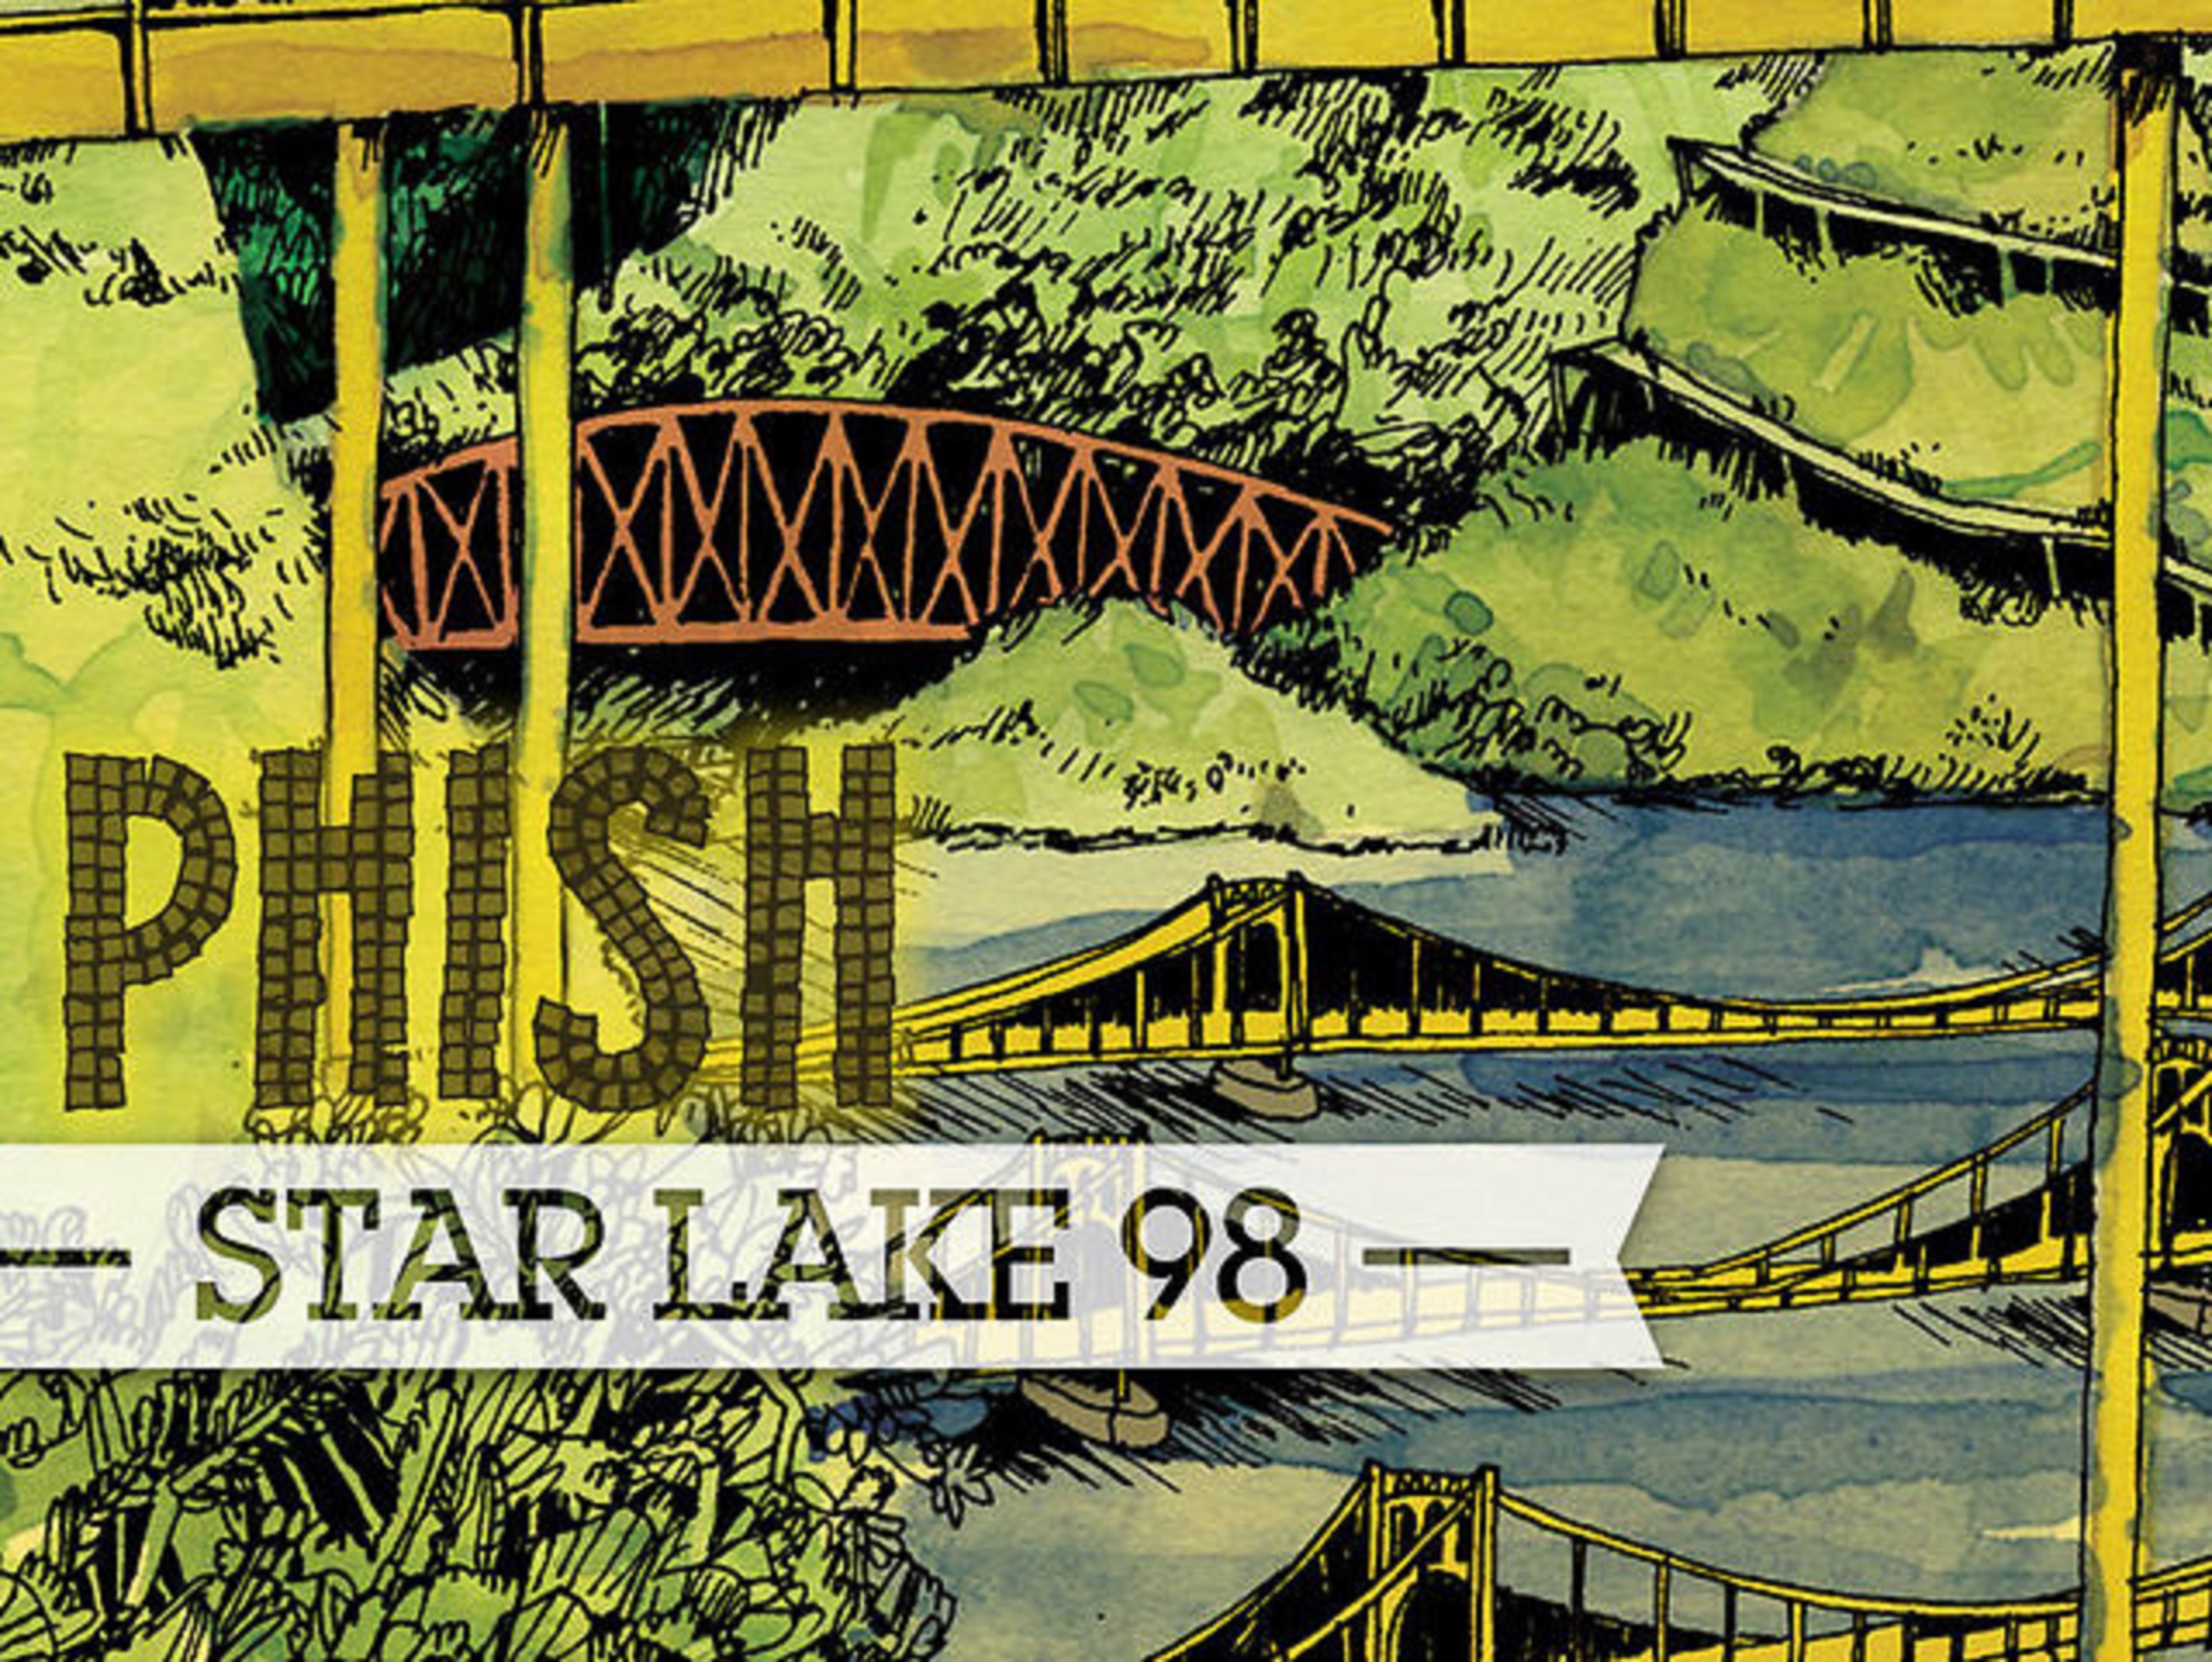 Phish | Star Lake '98 | Review | Grateful Web